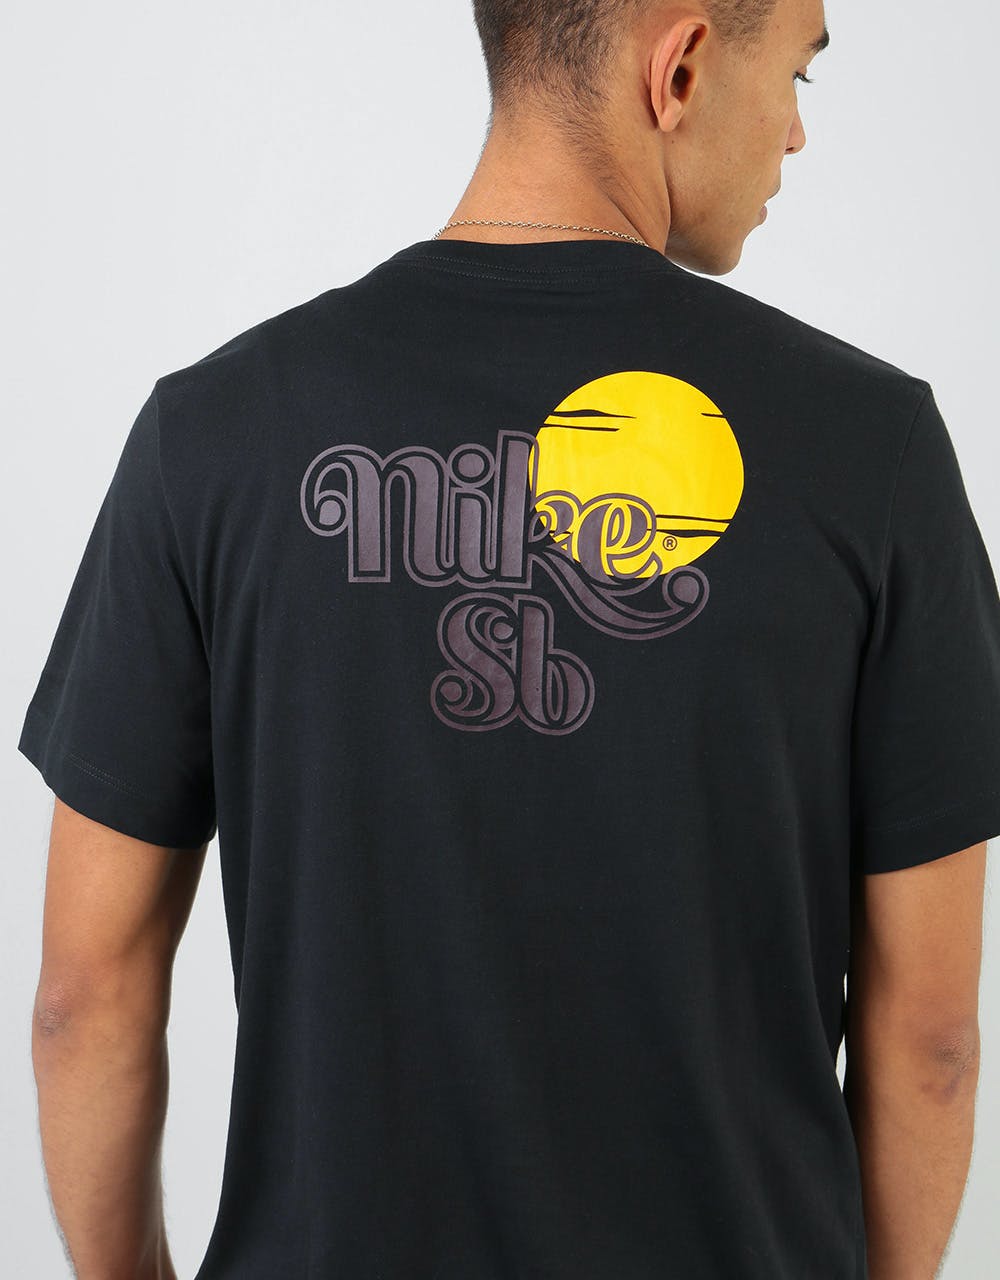 Nike SB Sunrise T-Shirt - Black/Mahogany